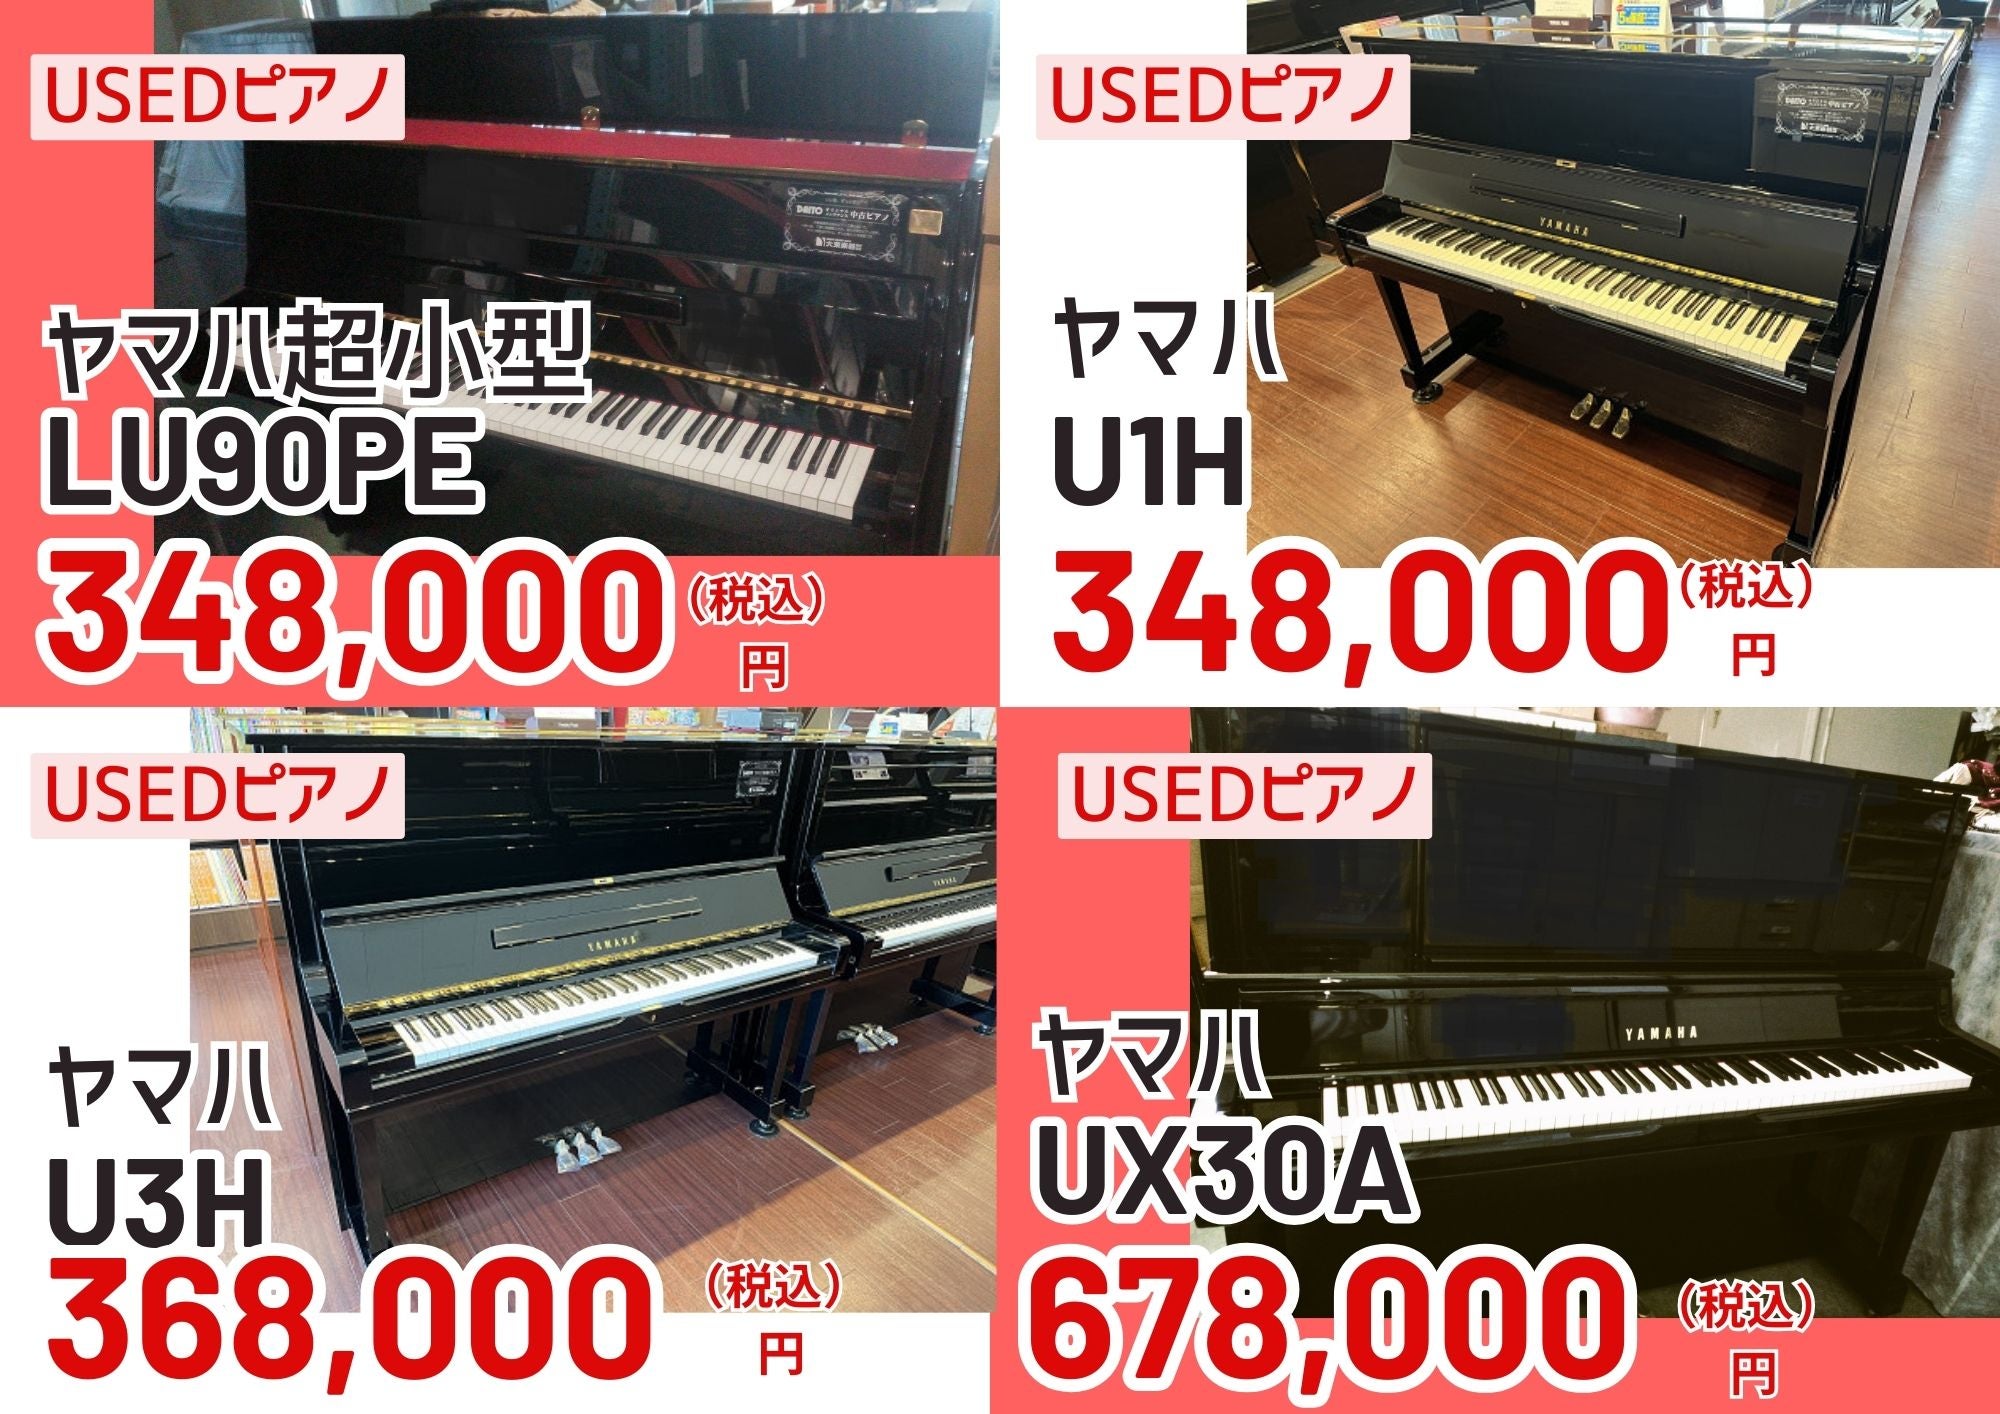 中古ピアノの展示量をアップ！
5/3販売開始のお買い得中古ピアノ！